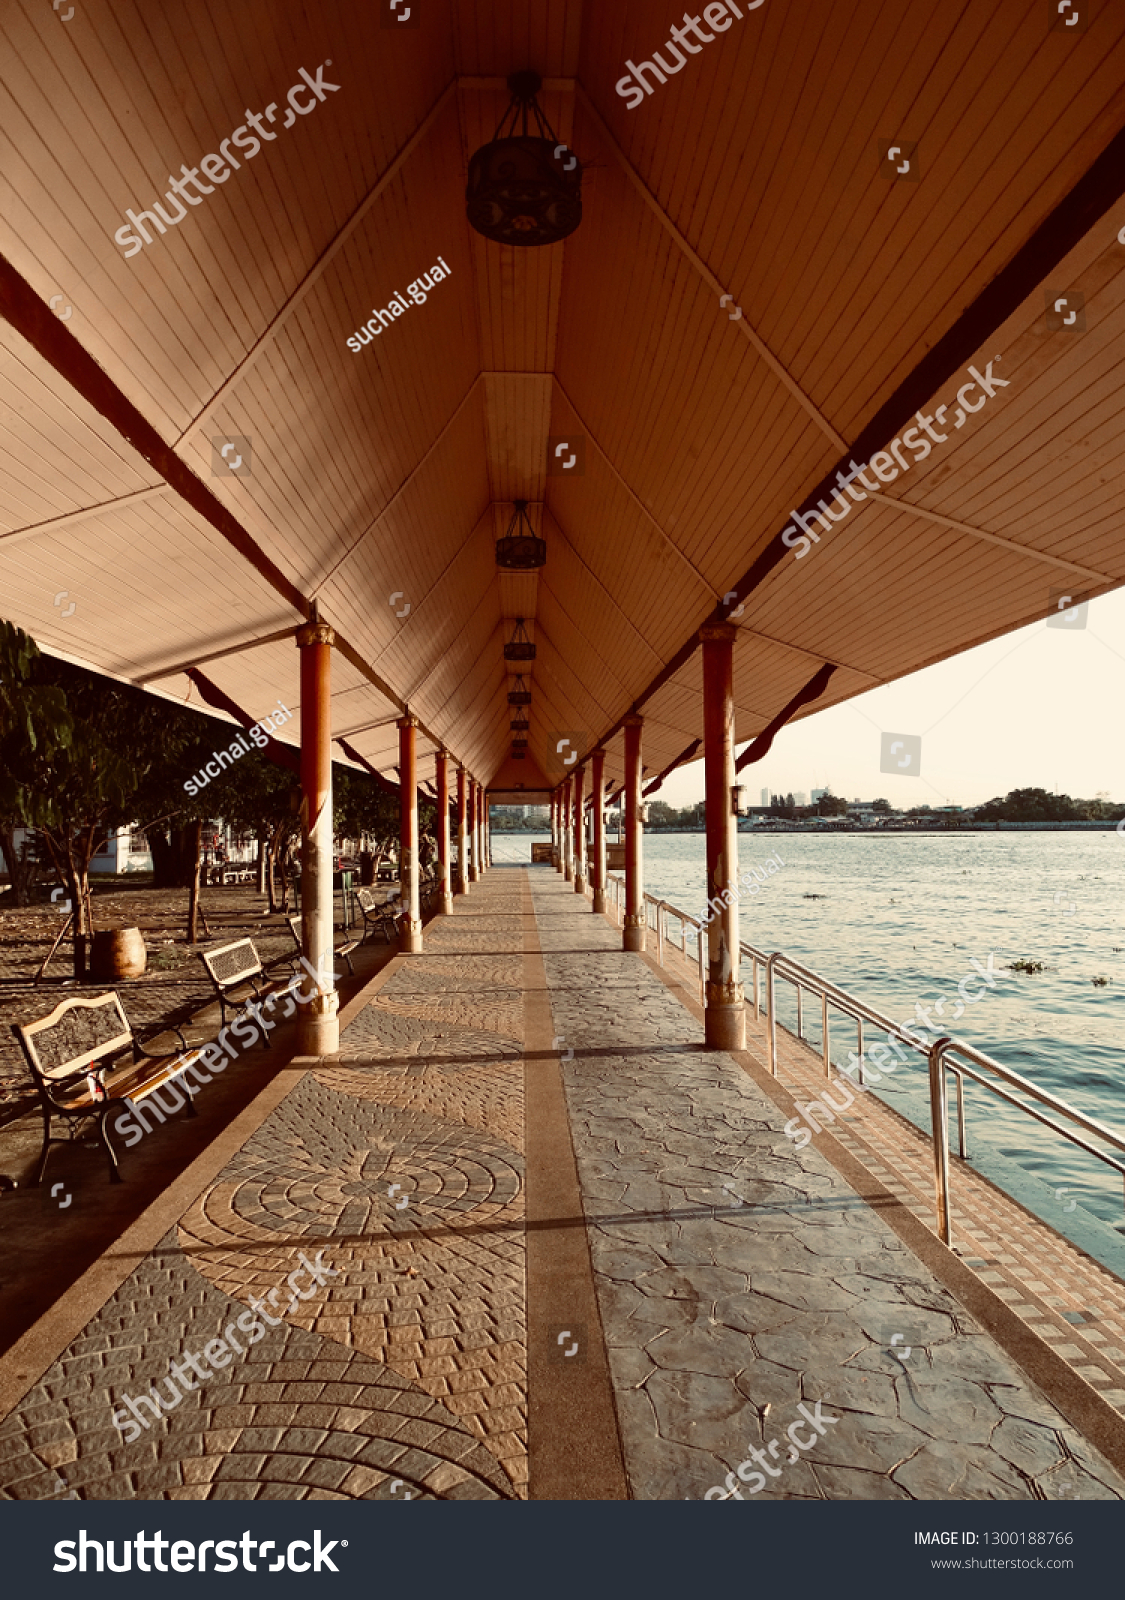 Long Waterfront Pavilion. Waterfront pavilion with waterfront stairs. Temple pavilion at North Bangkok Thailand. -image #1300188766